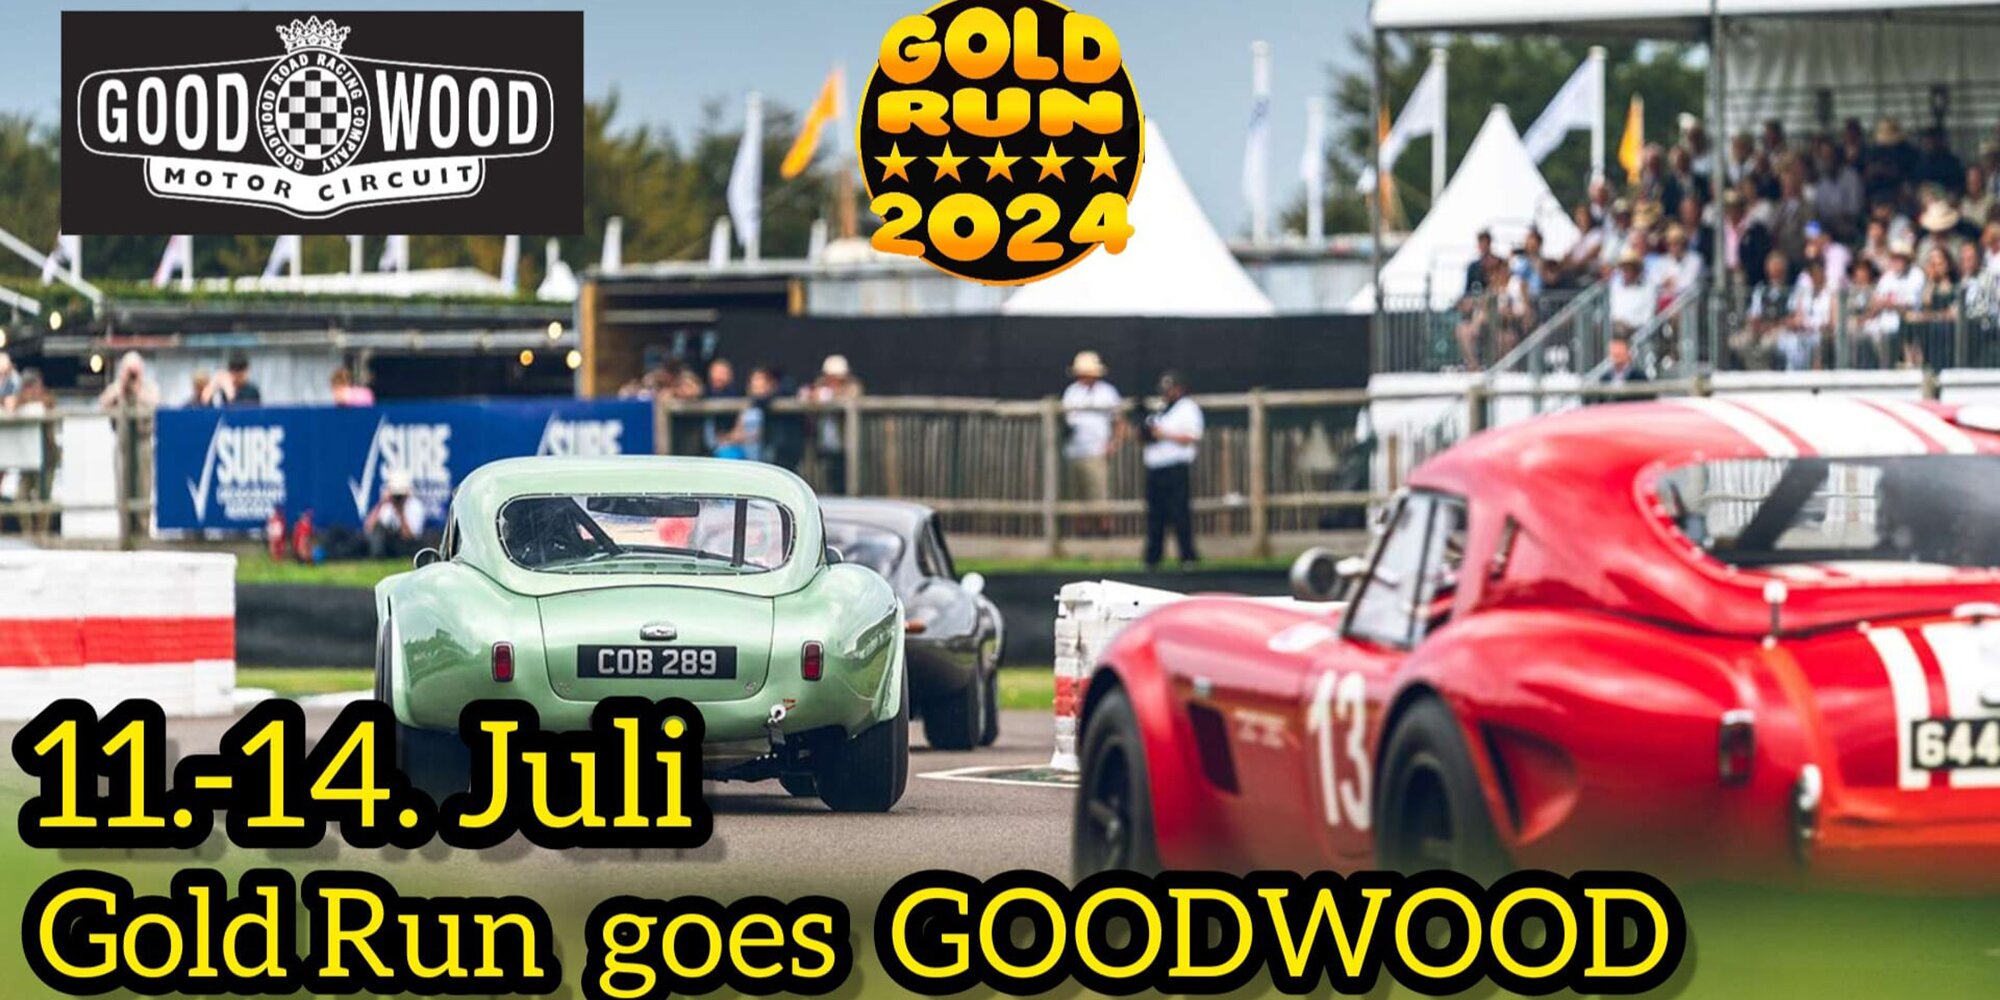 Goodwood-Motor Circuit